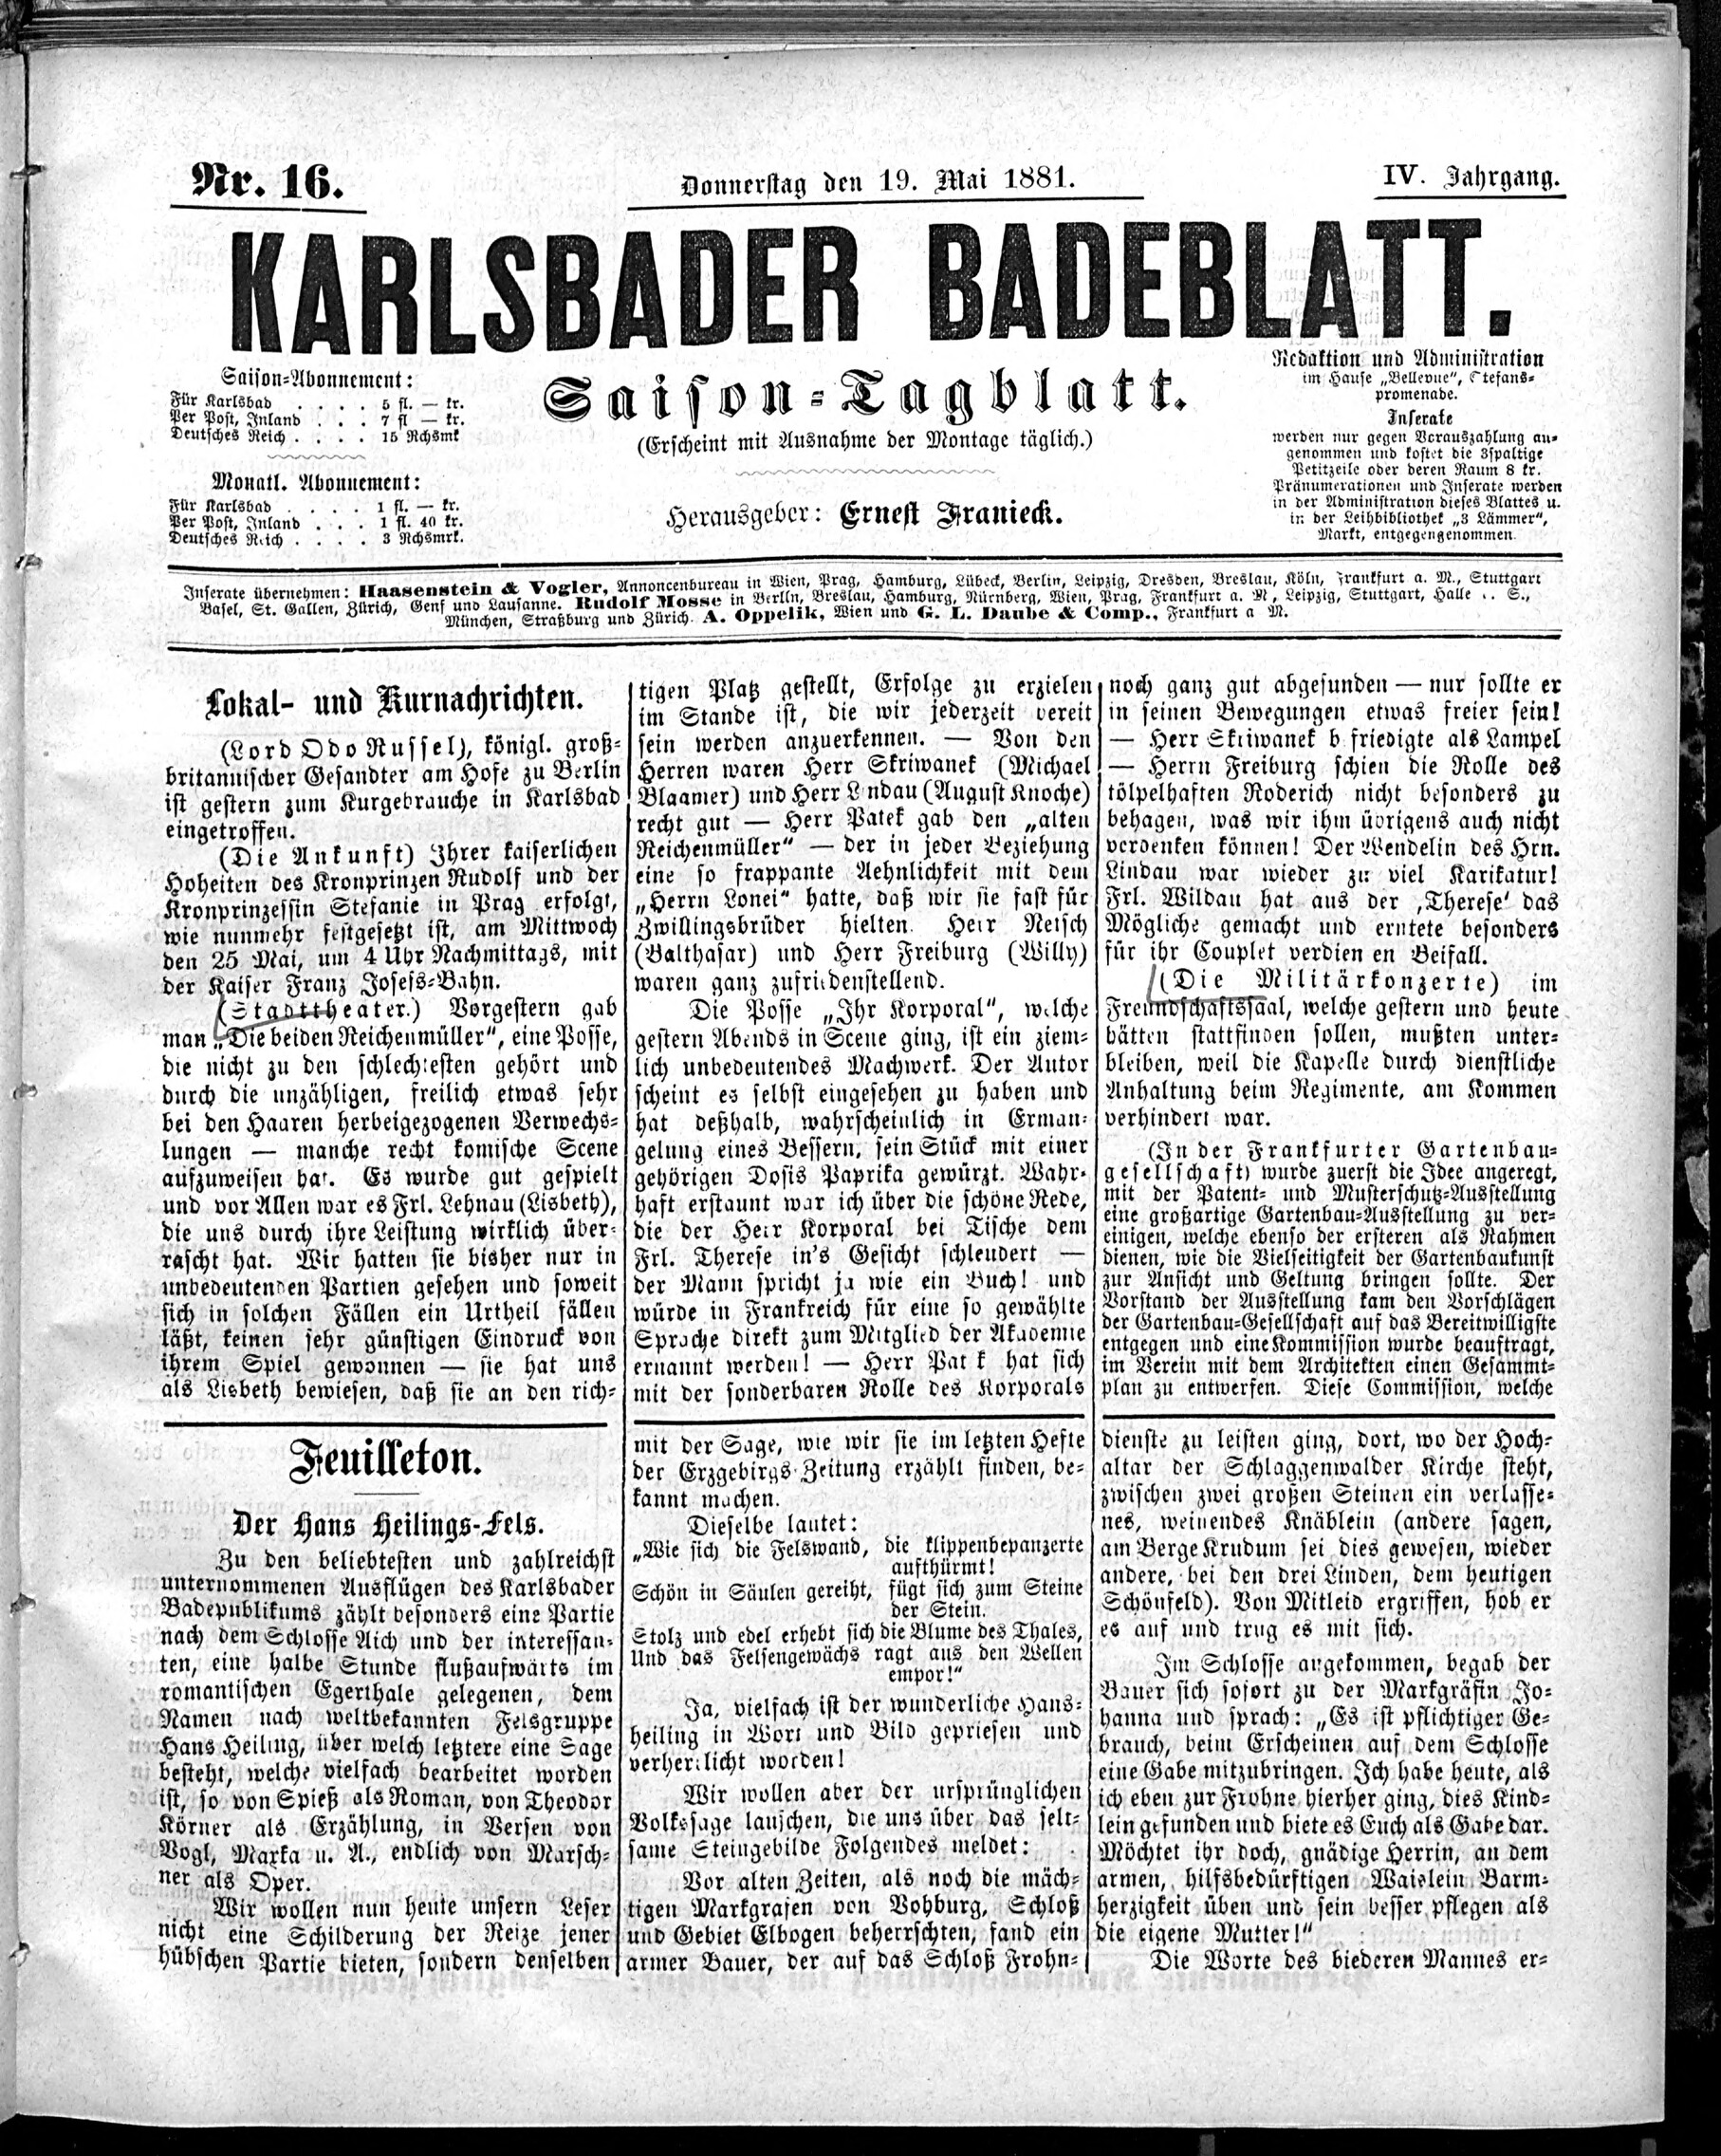 1. karlsbader-badeblatt-1881-05-19-n16_0345